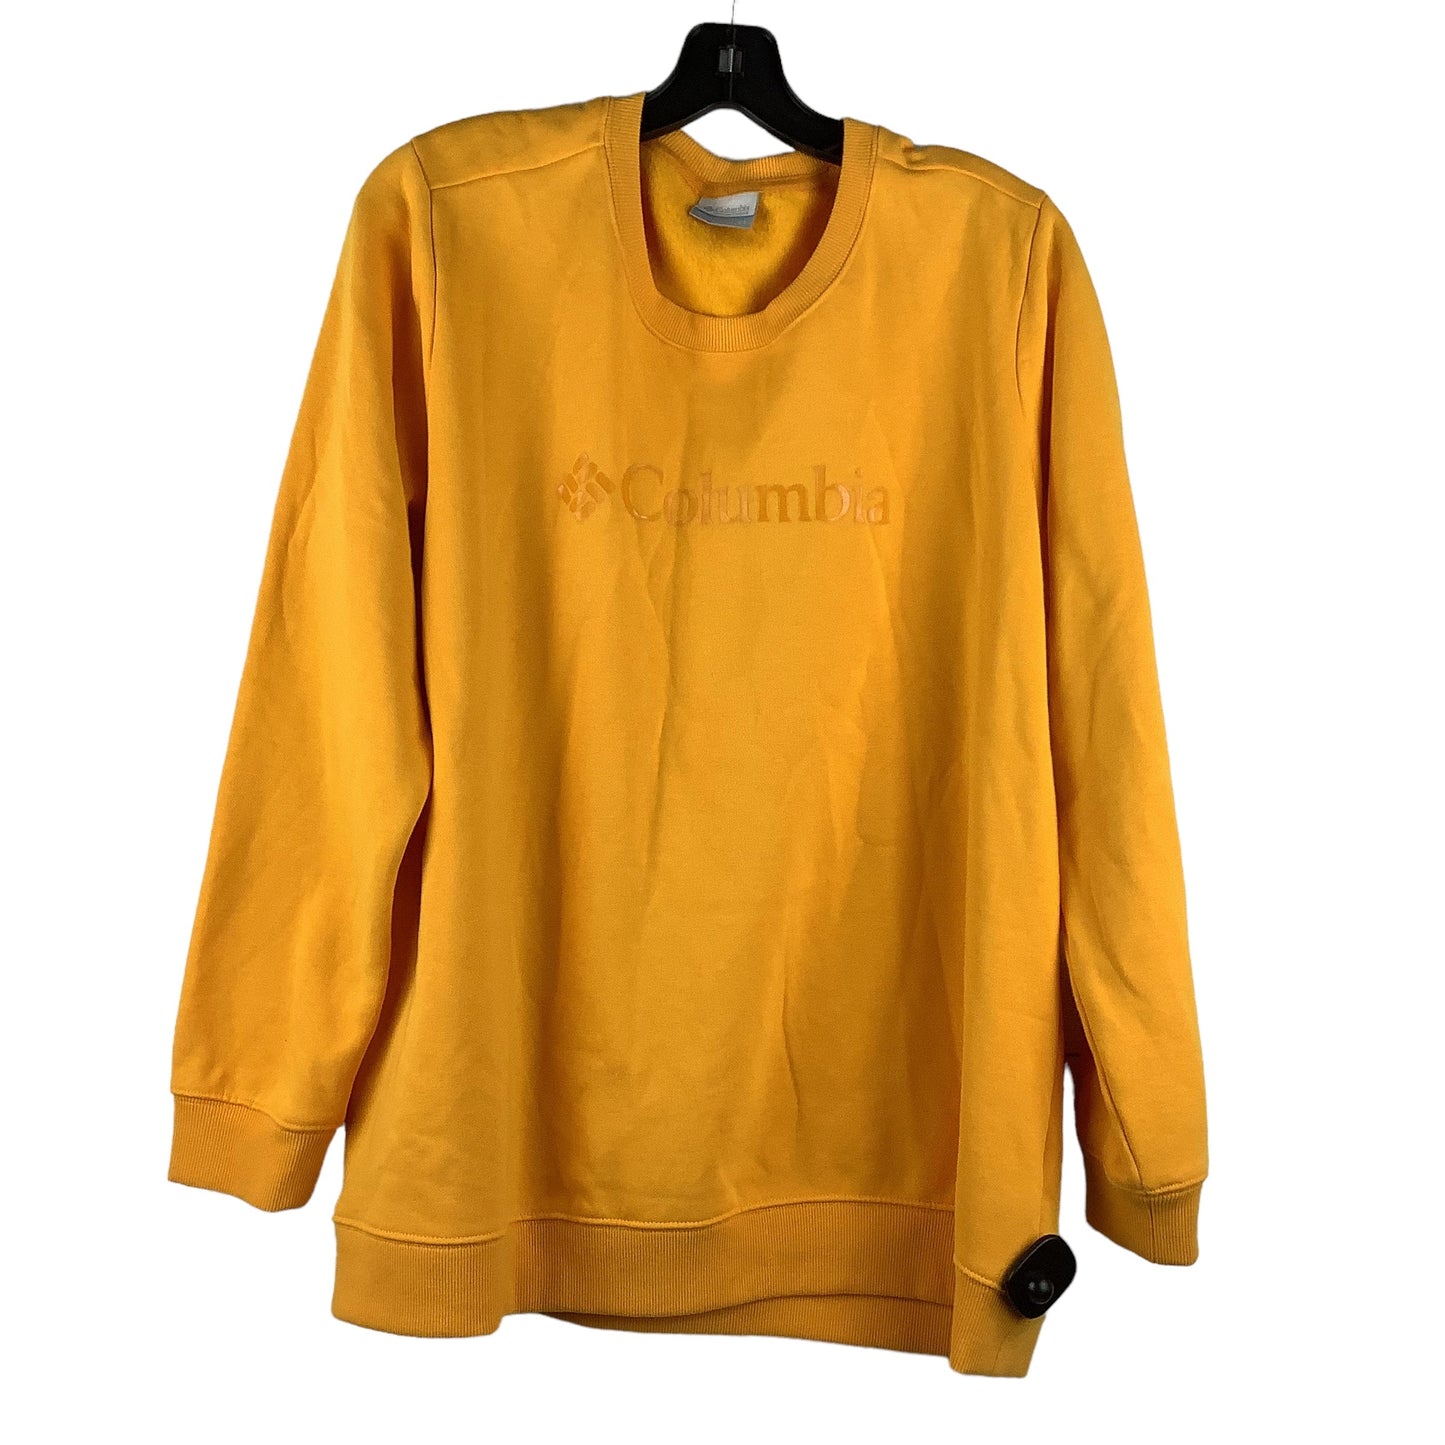 Yellow Athletic Sweatshirt Crewneck Columbia, Size 2x